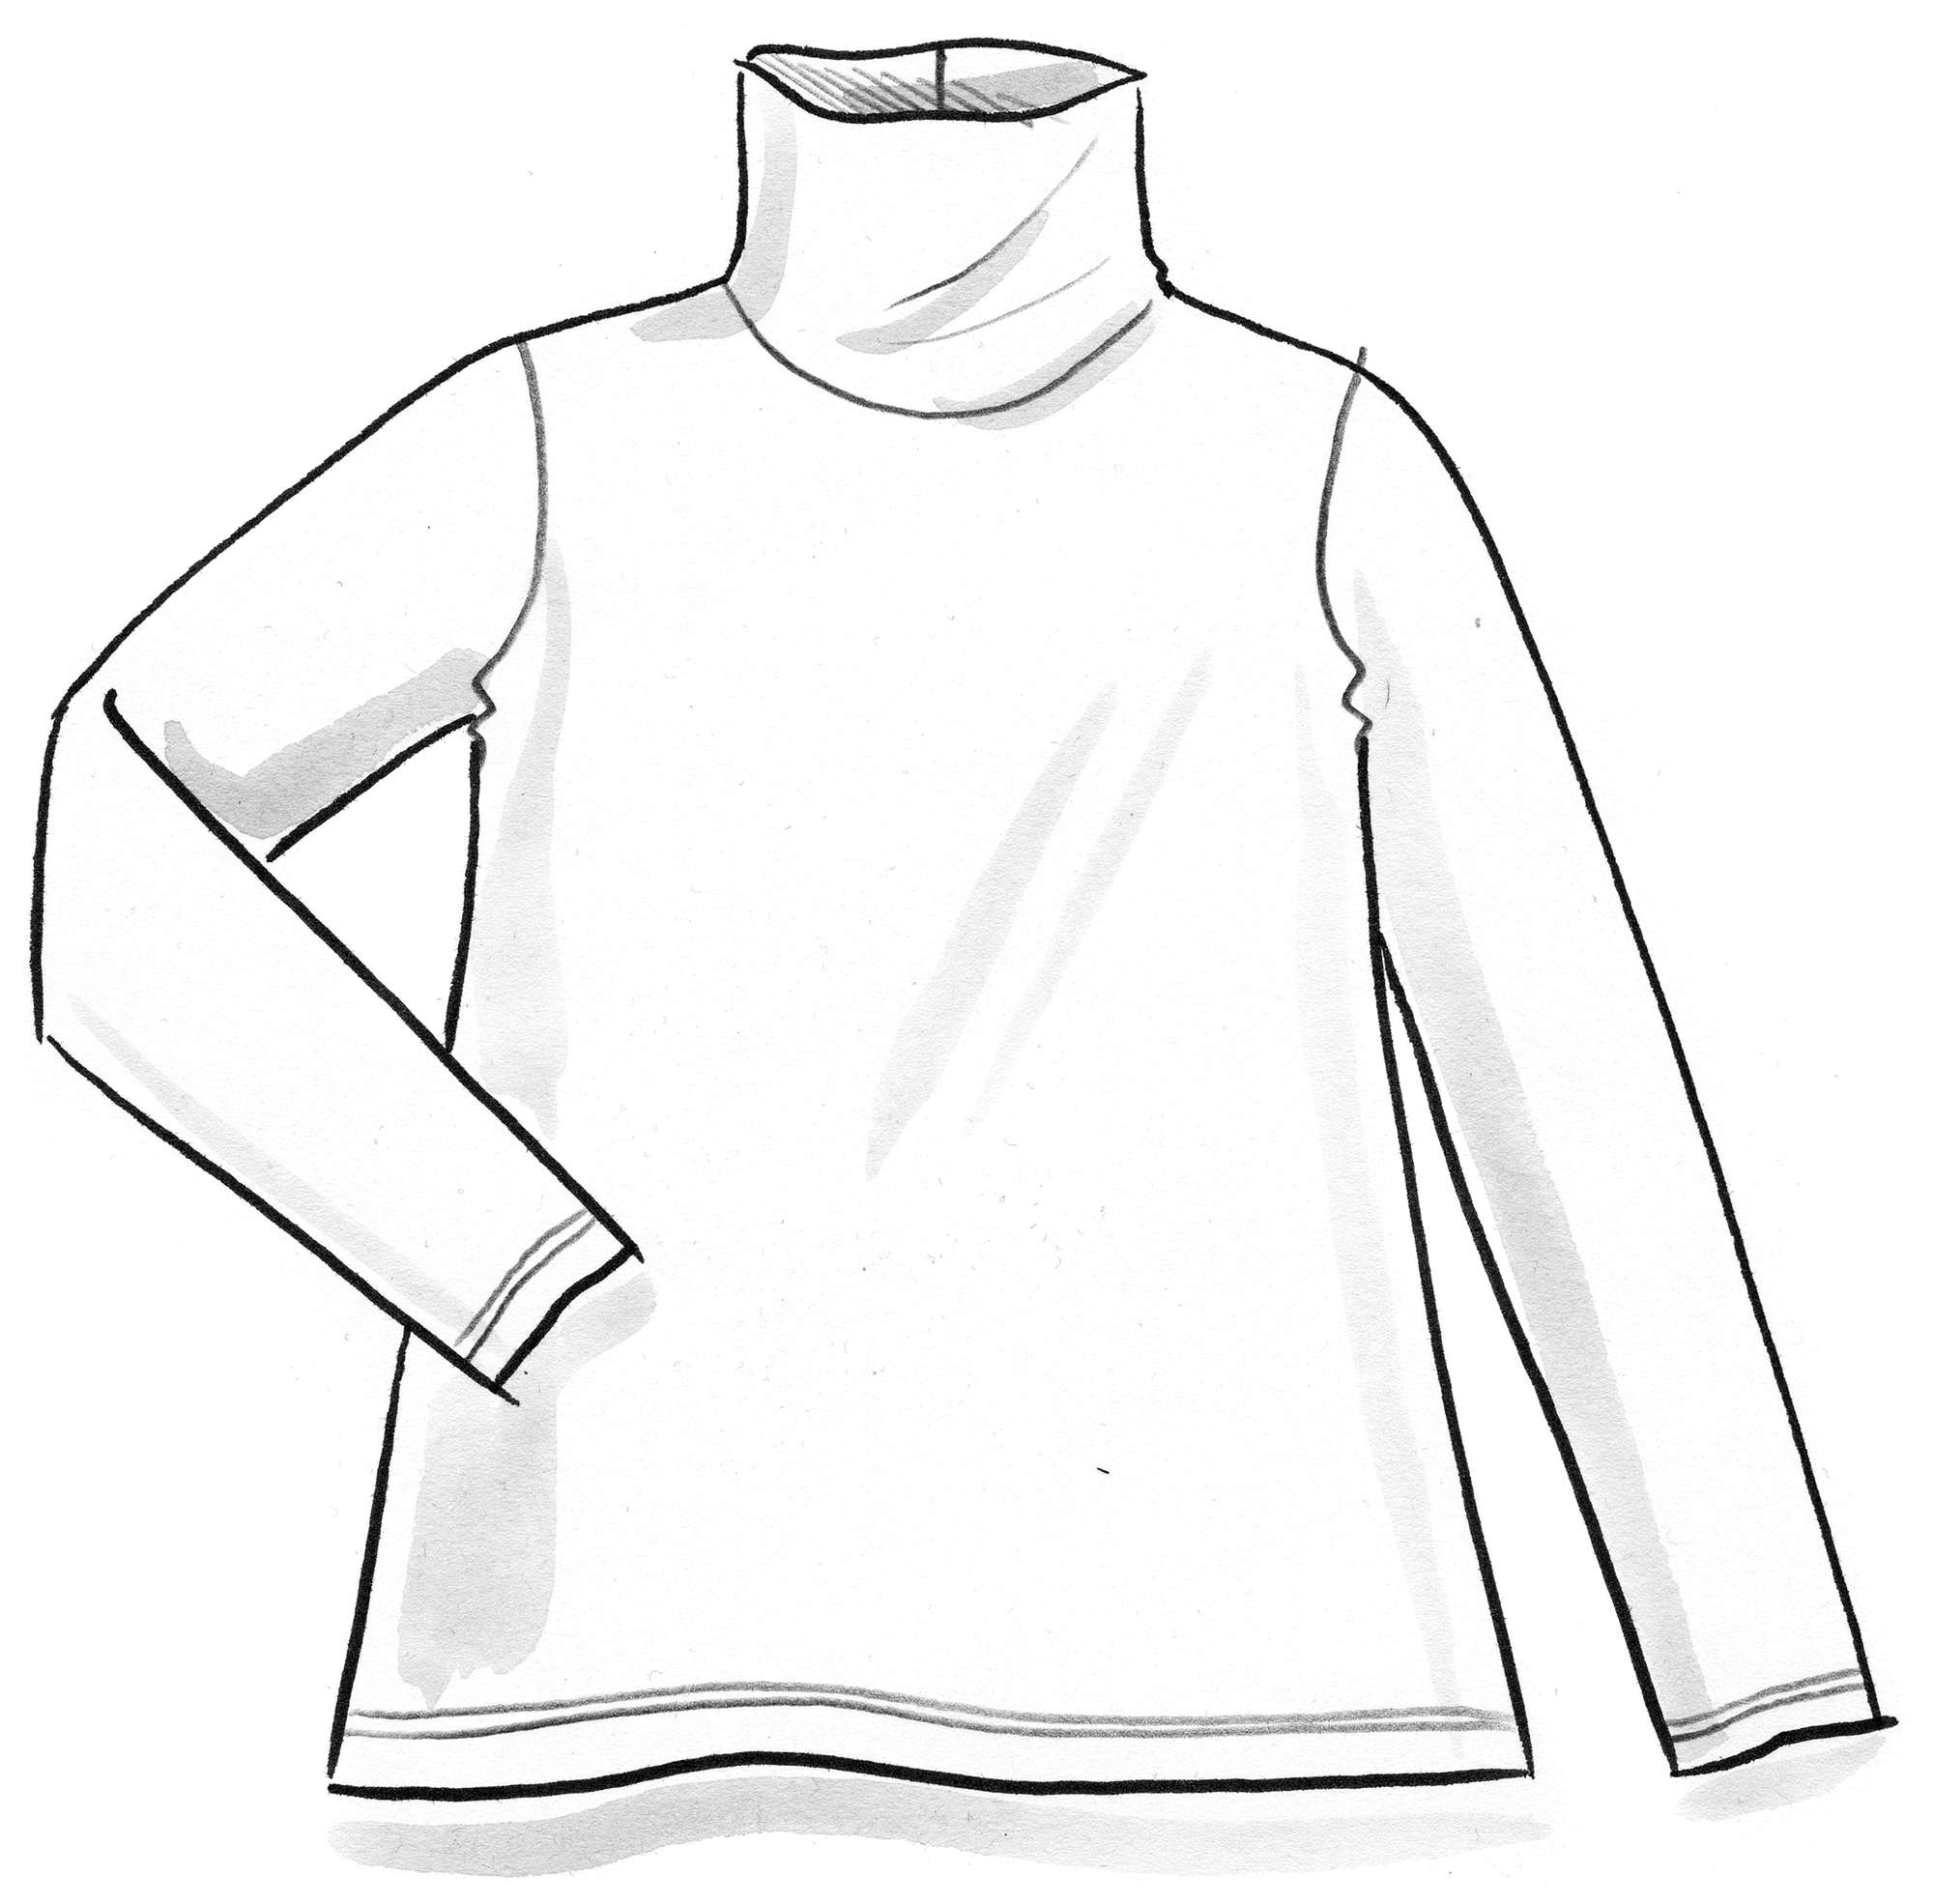 Lyocell/elastane jersey polo-neck top